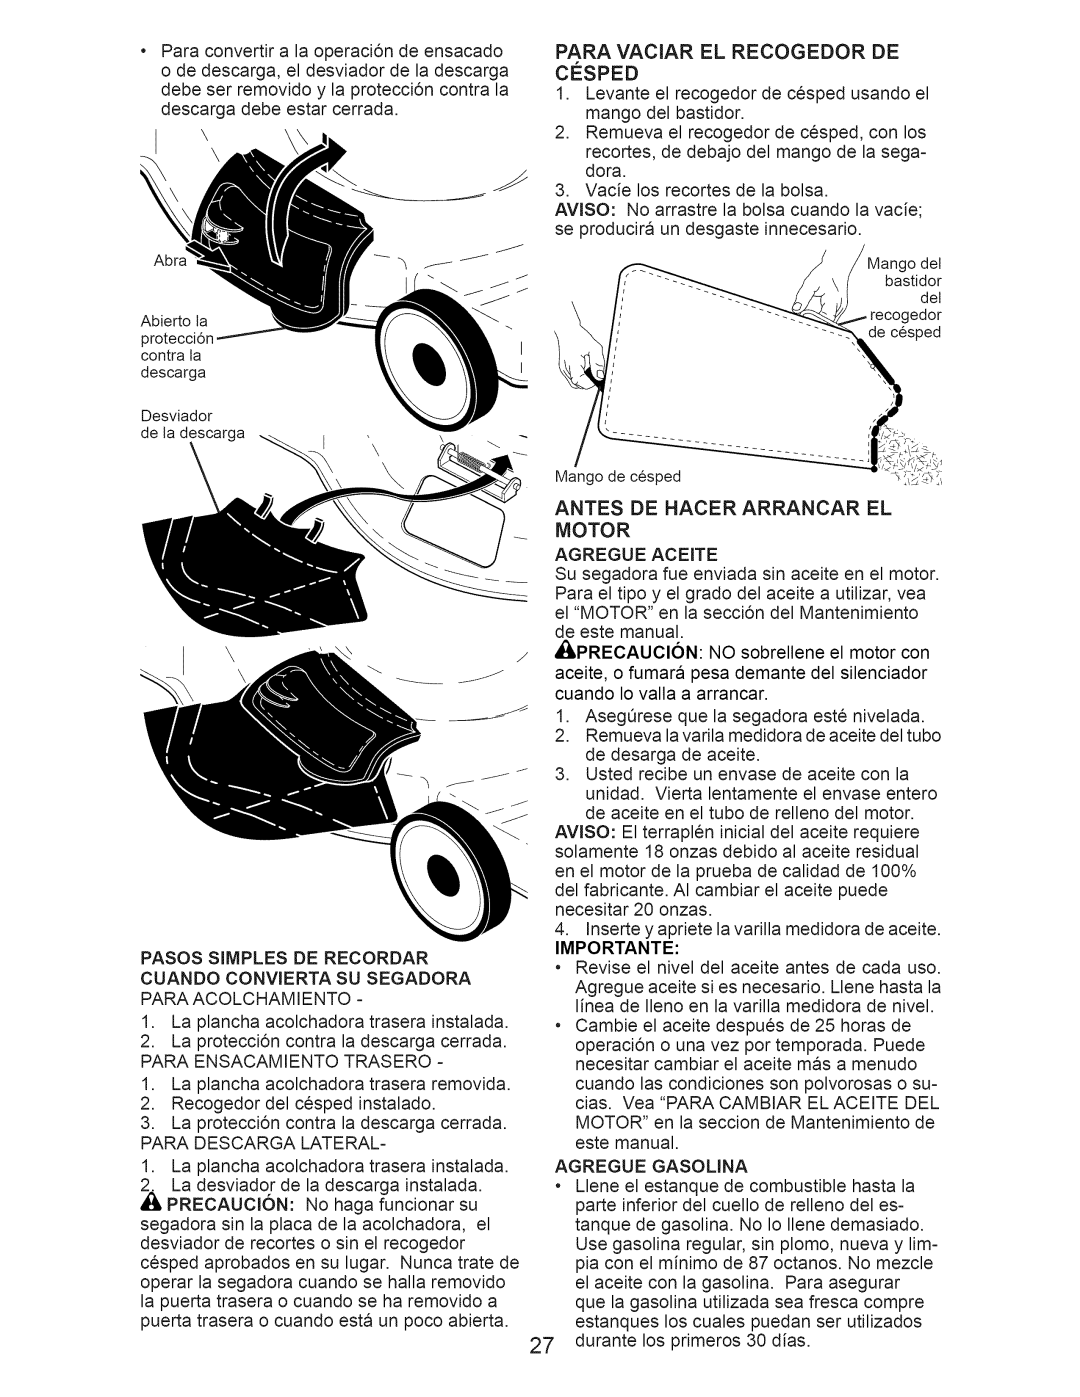 Craftsman 917.376231 owner manual Paraconvertira la operaci6ndeensacado, Antes De Hacer Arrancar El Motor 